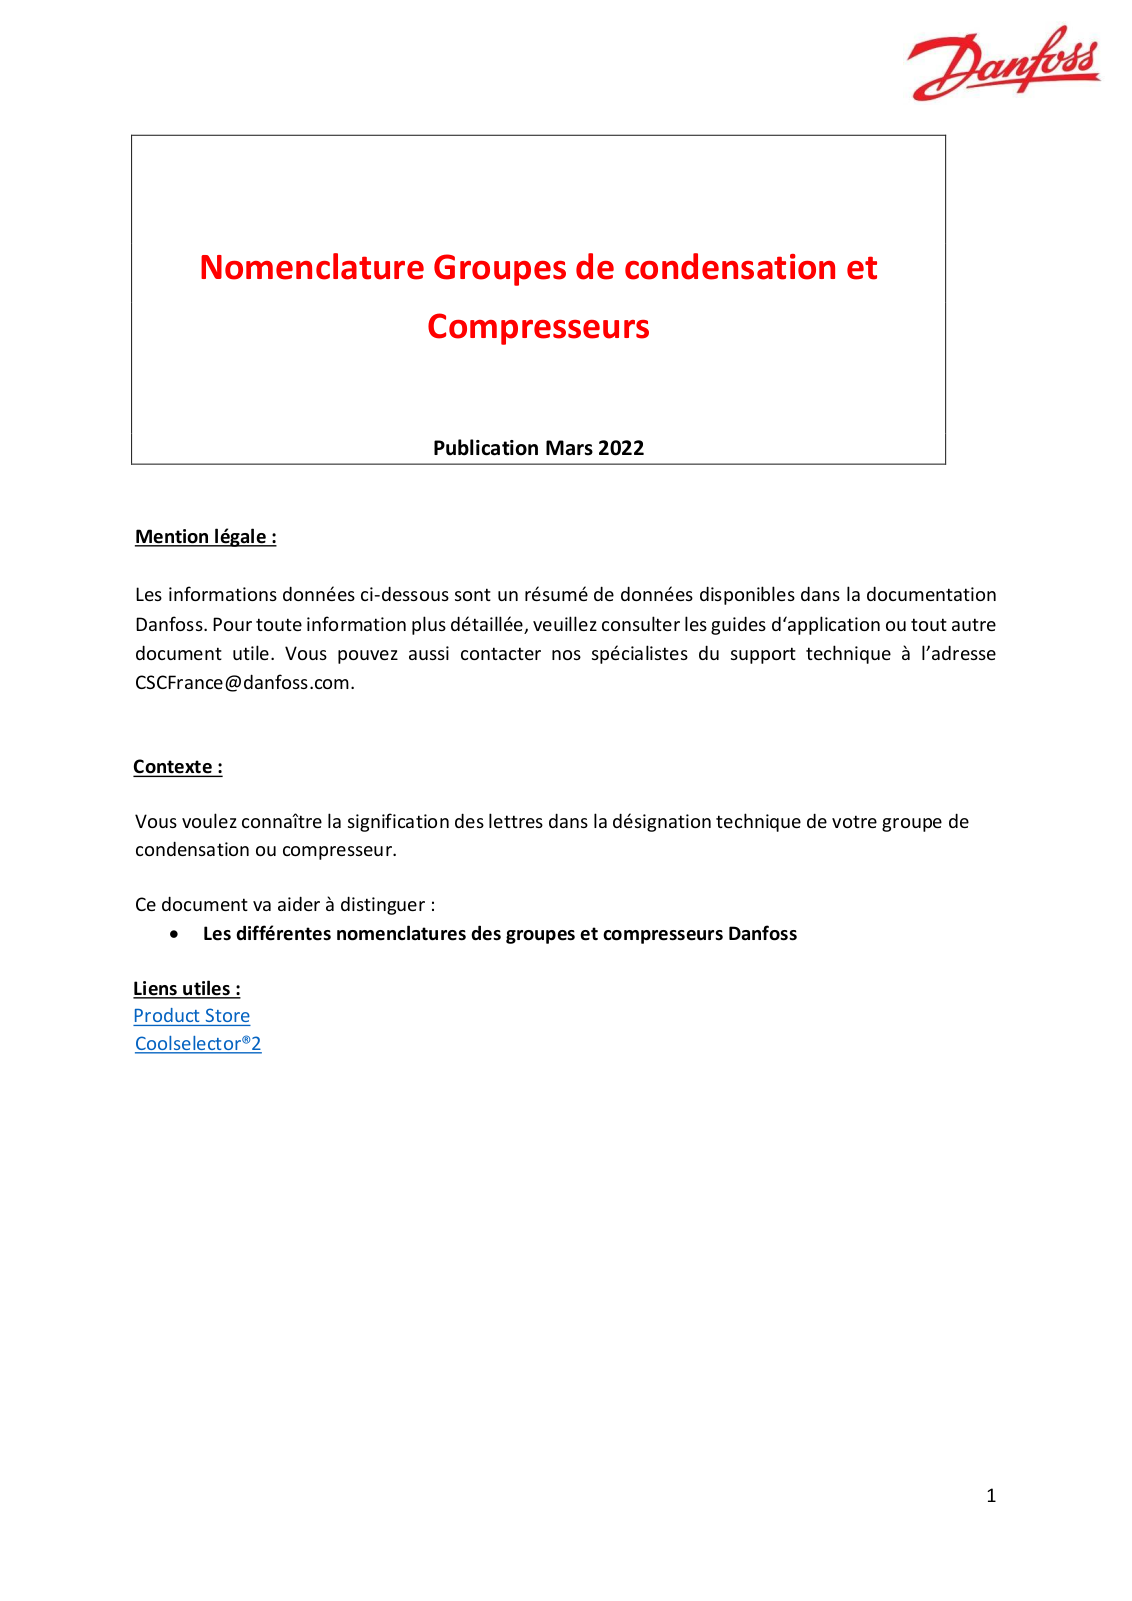 Danfoss Nomenclature Groupes de condensation et Compresseurs Compendium